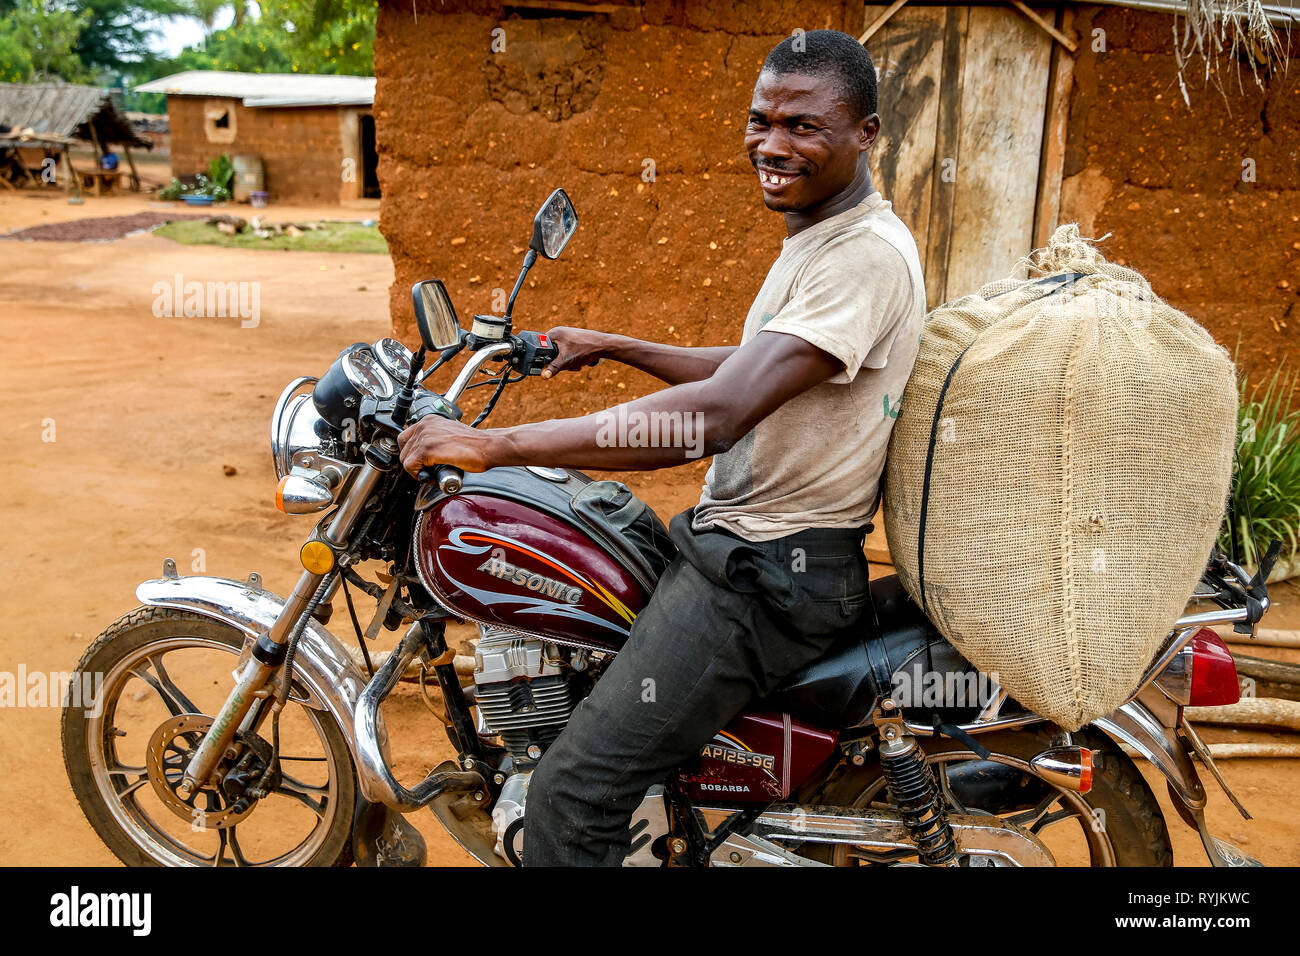 Semoir cacao la conduite d'une moto dans un village près de Daloa, Côte d'Ivoire. Banque D'Images